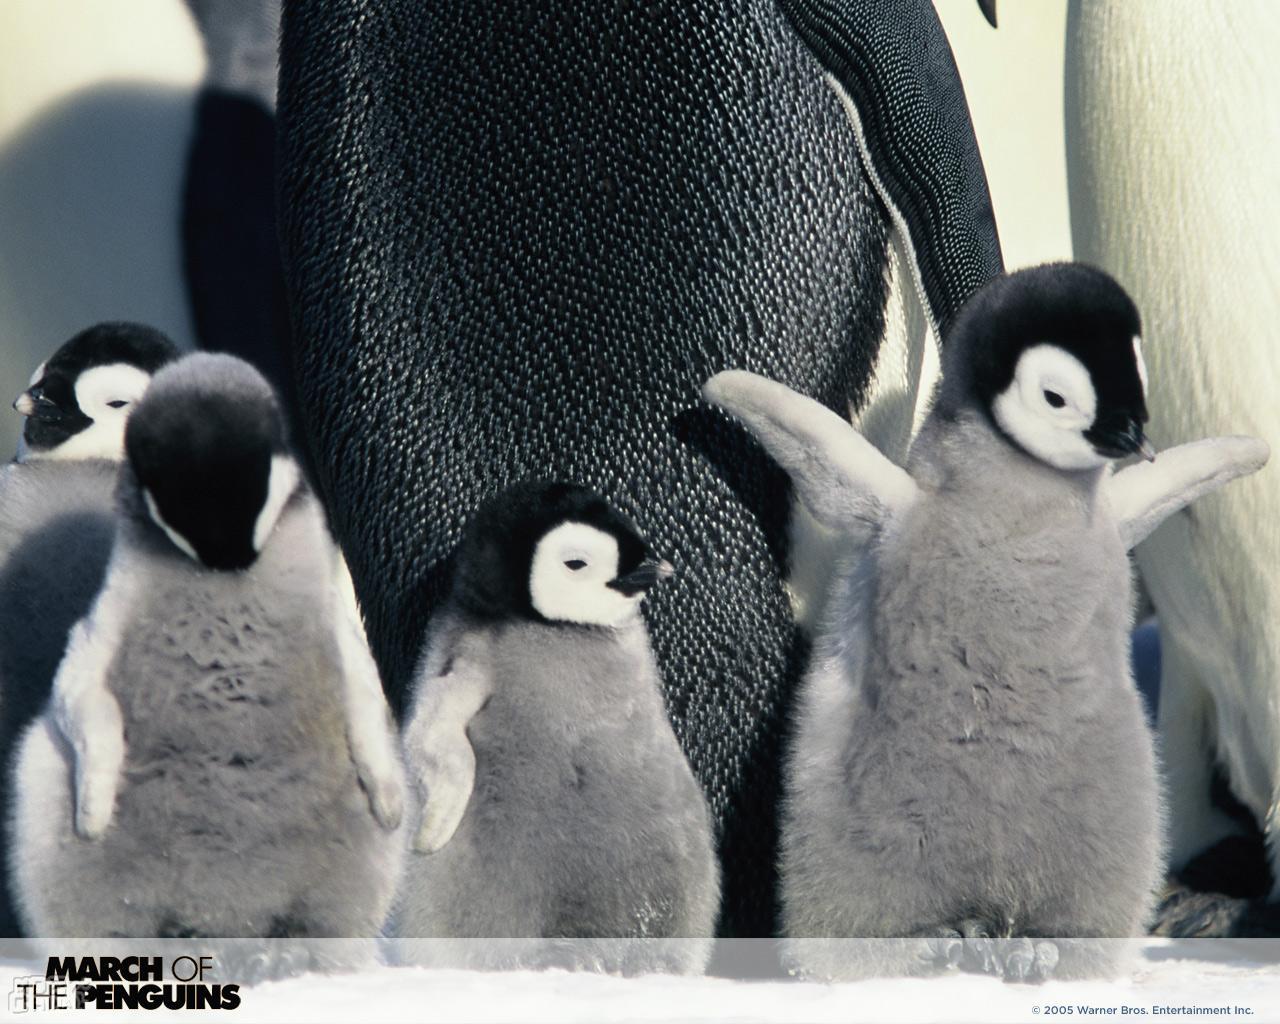 帝企鹅日记(2005)的海报和剧照 第26张/共44张【图片网】